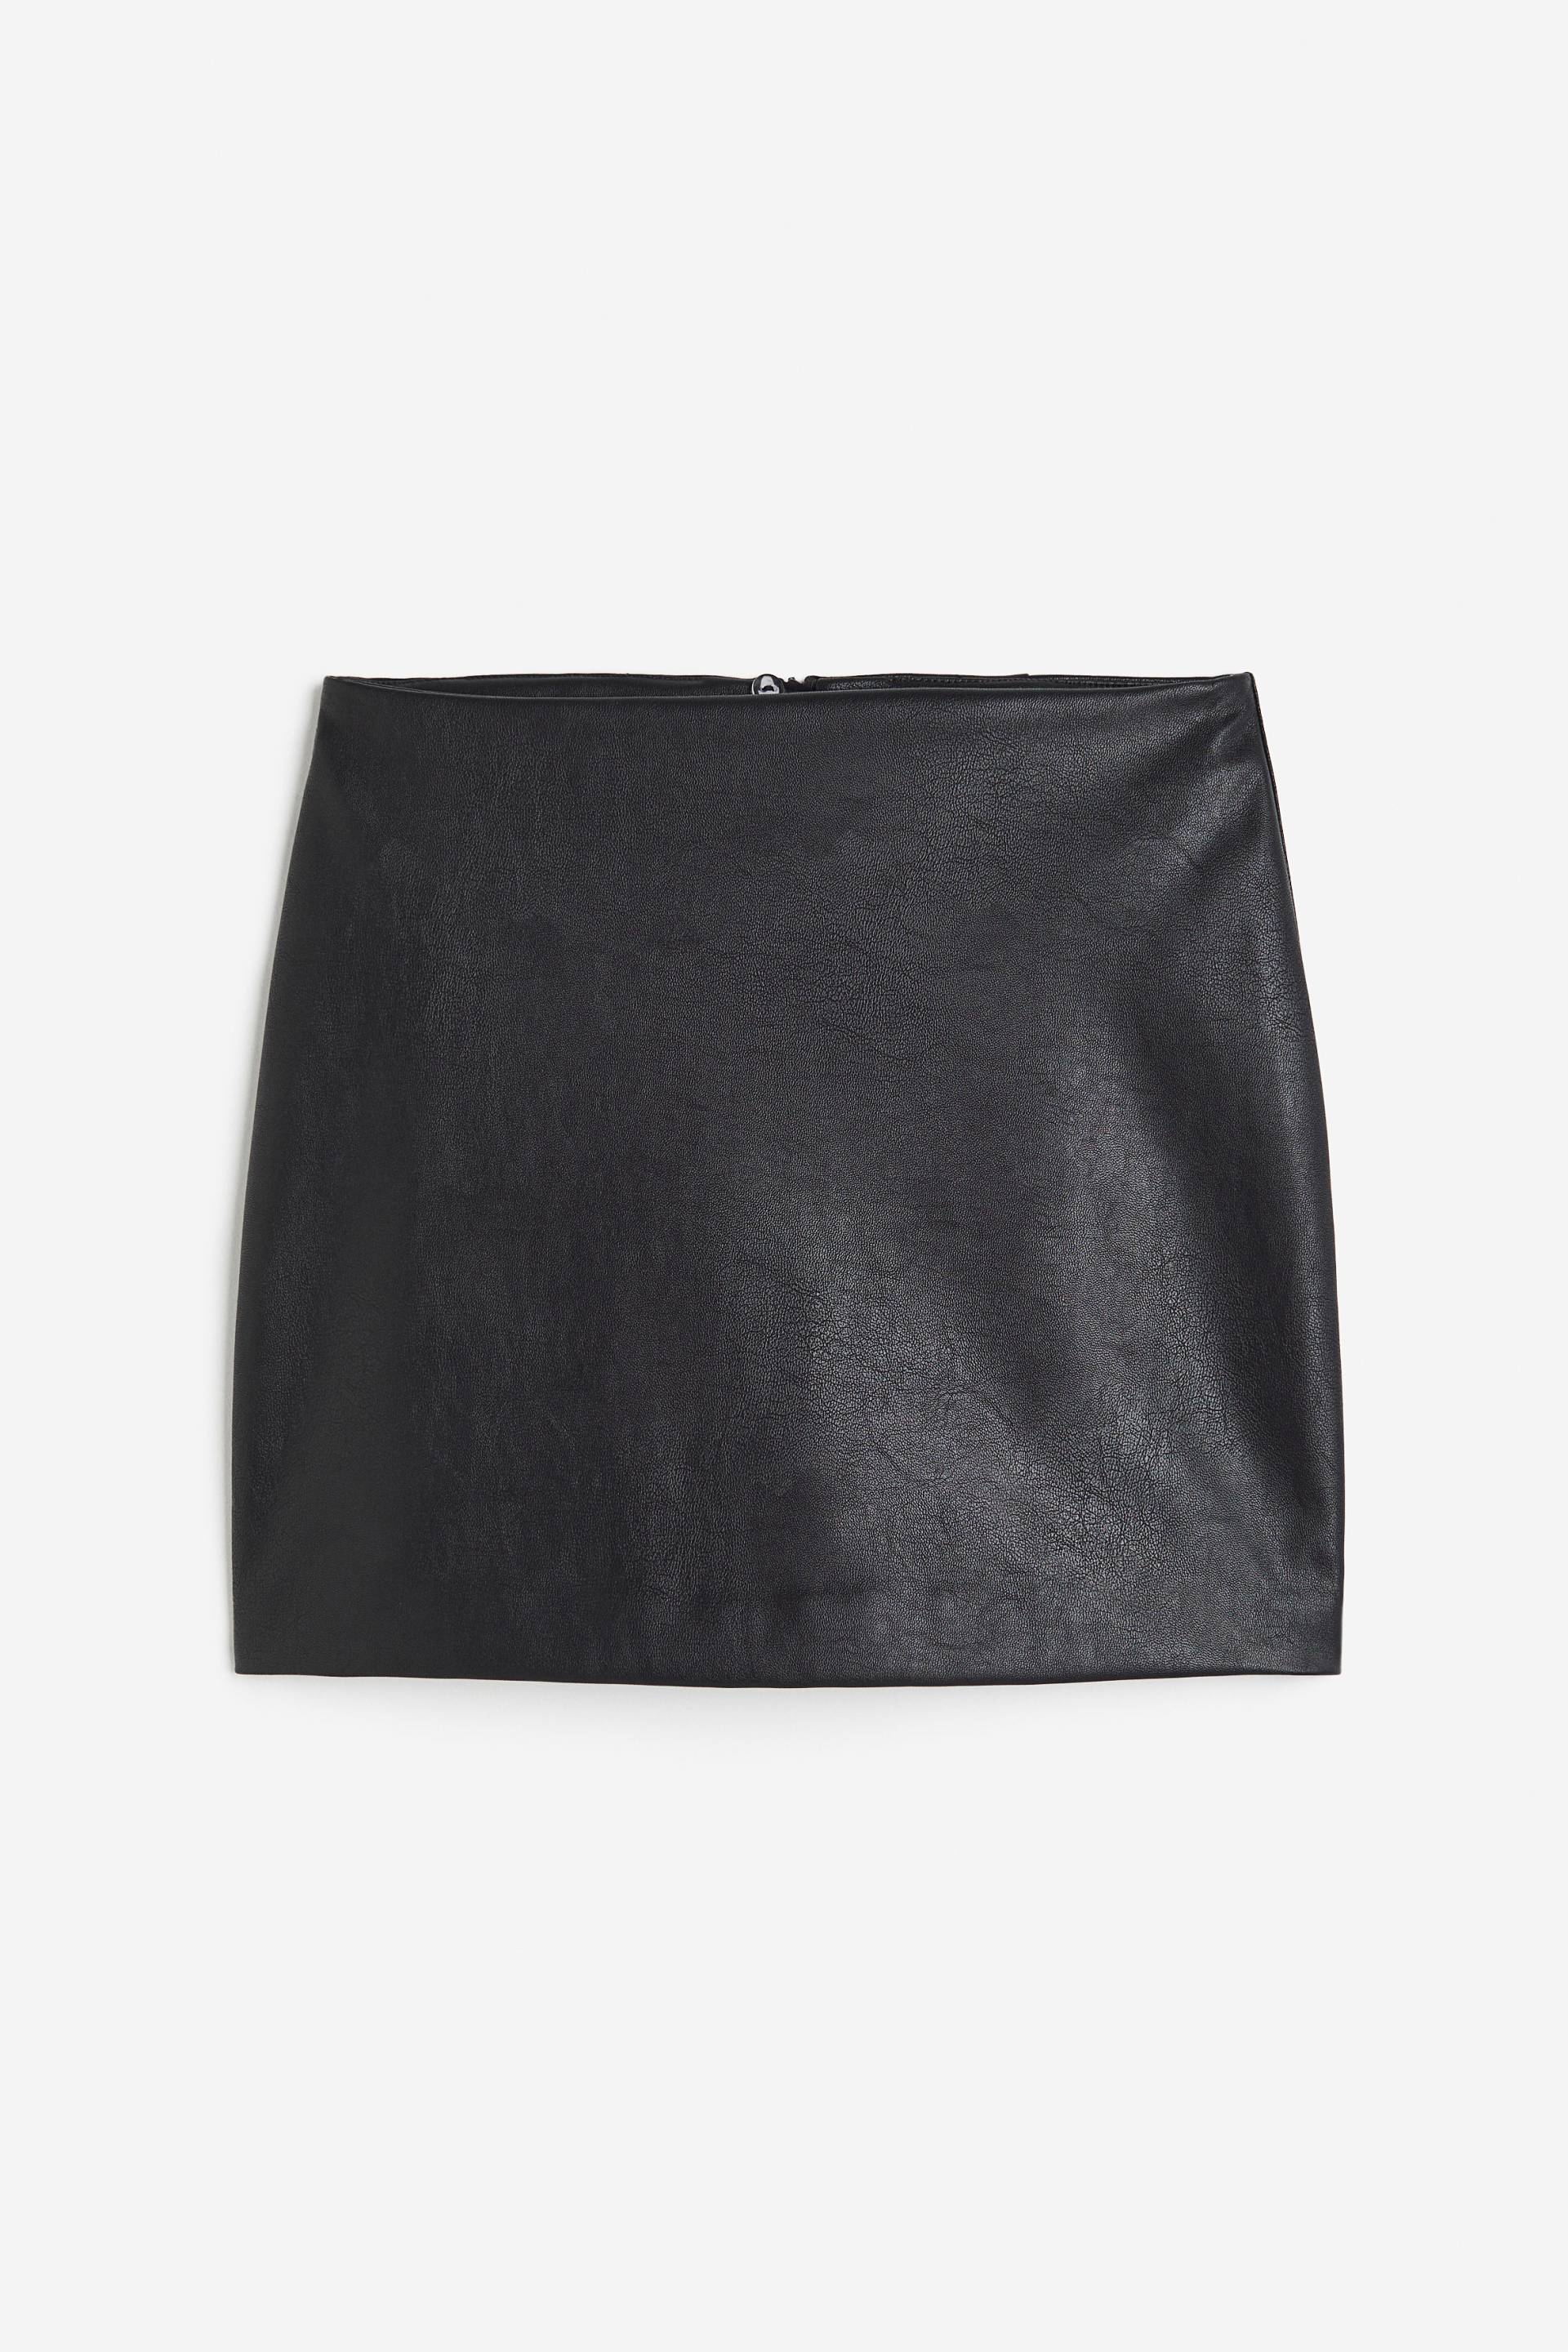 H&M Minirock Schwarz/Coating, Röcke in Größe 34. Farbe: Black/coated von H&M